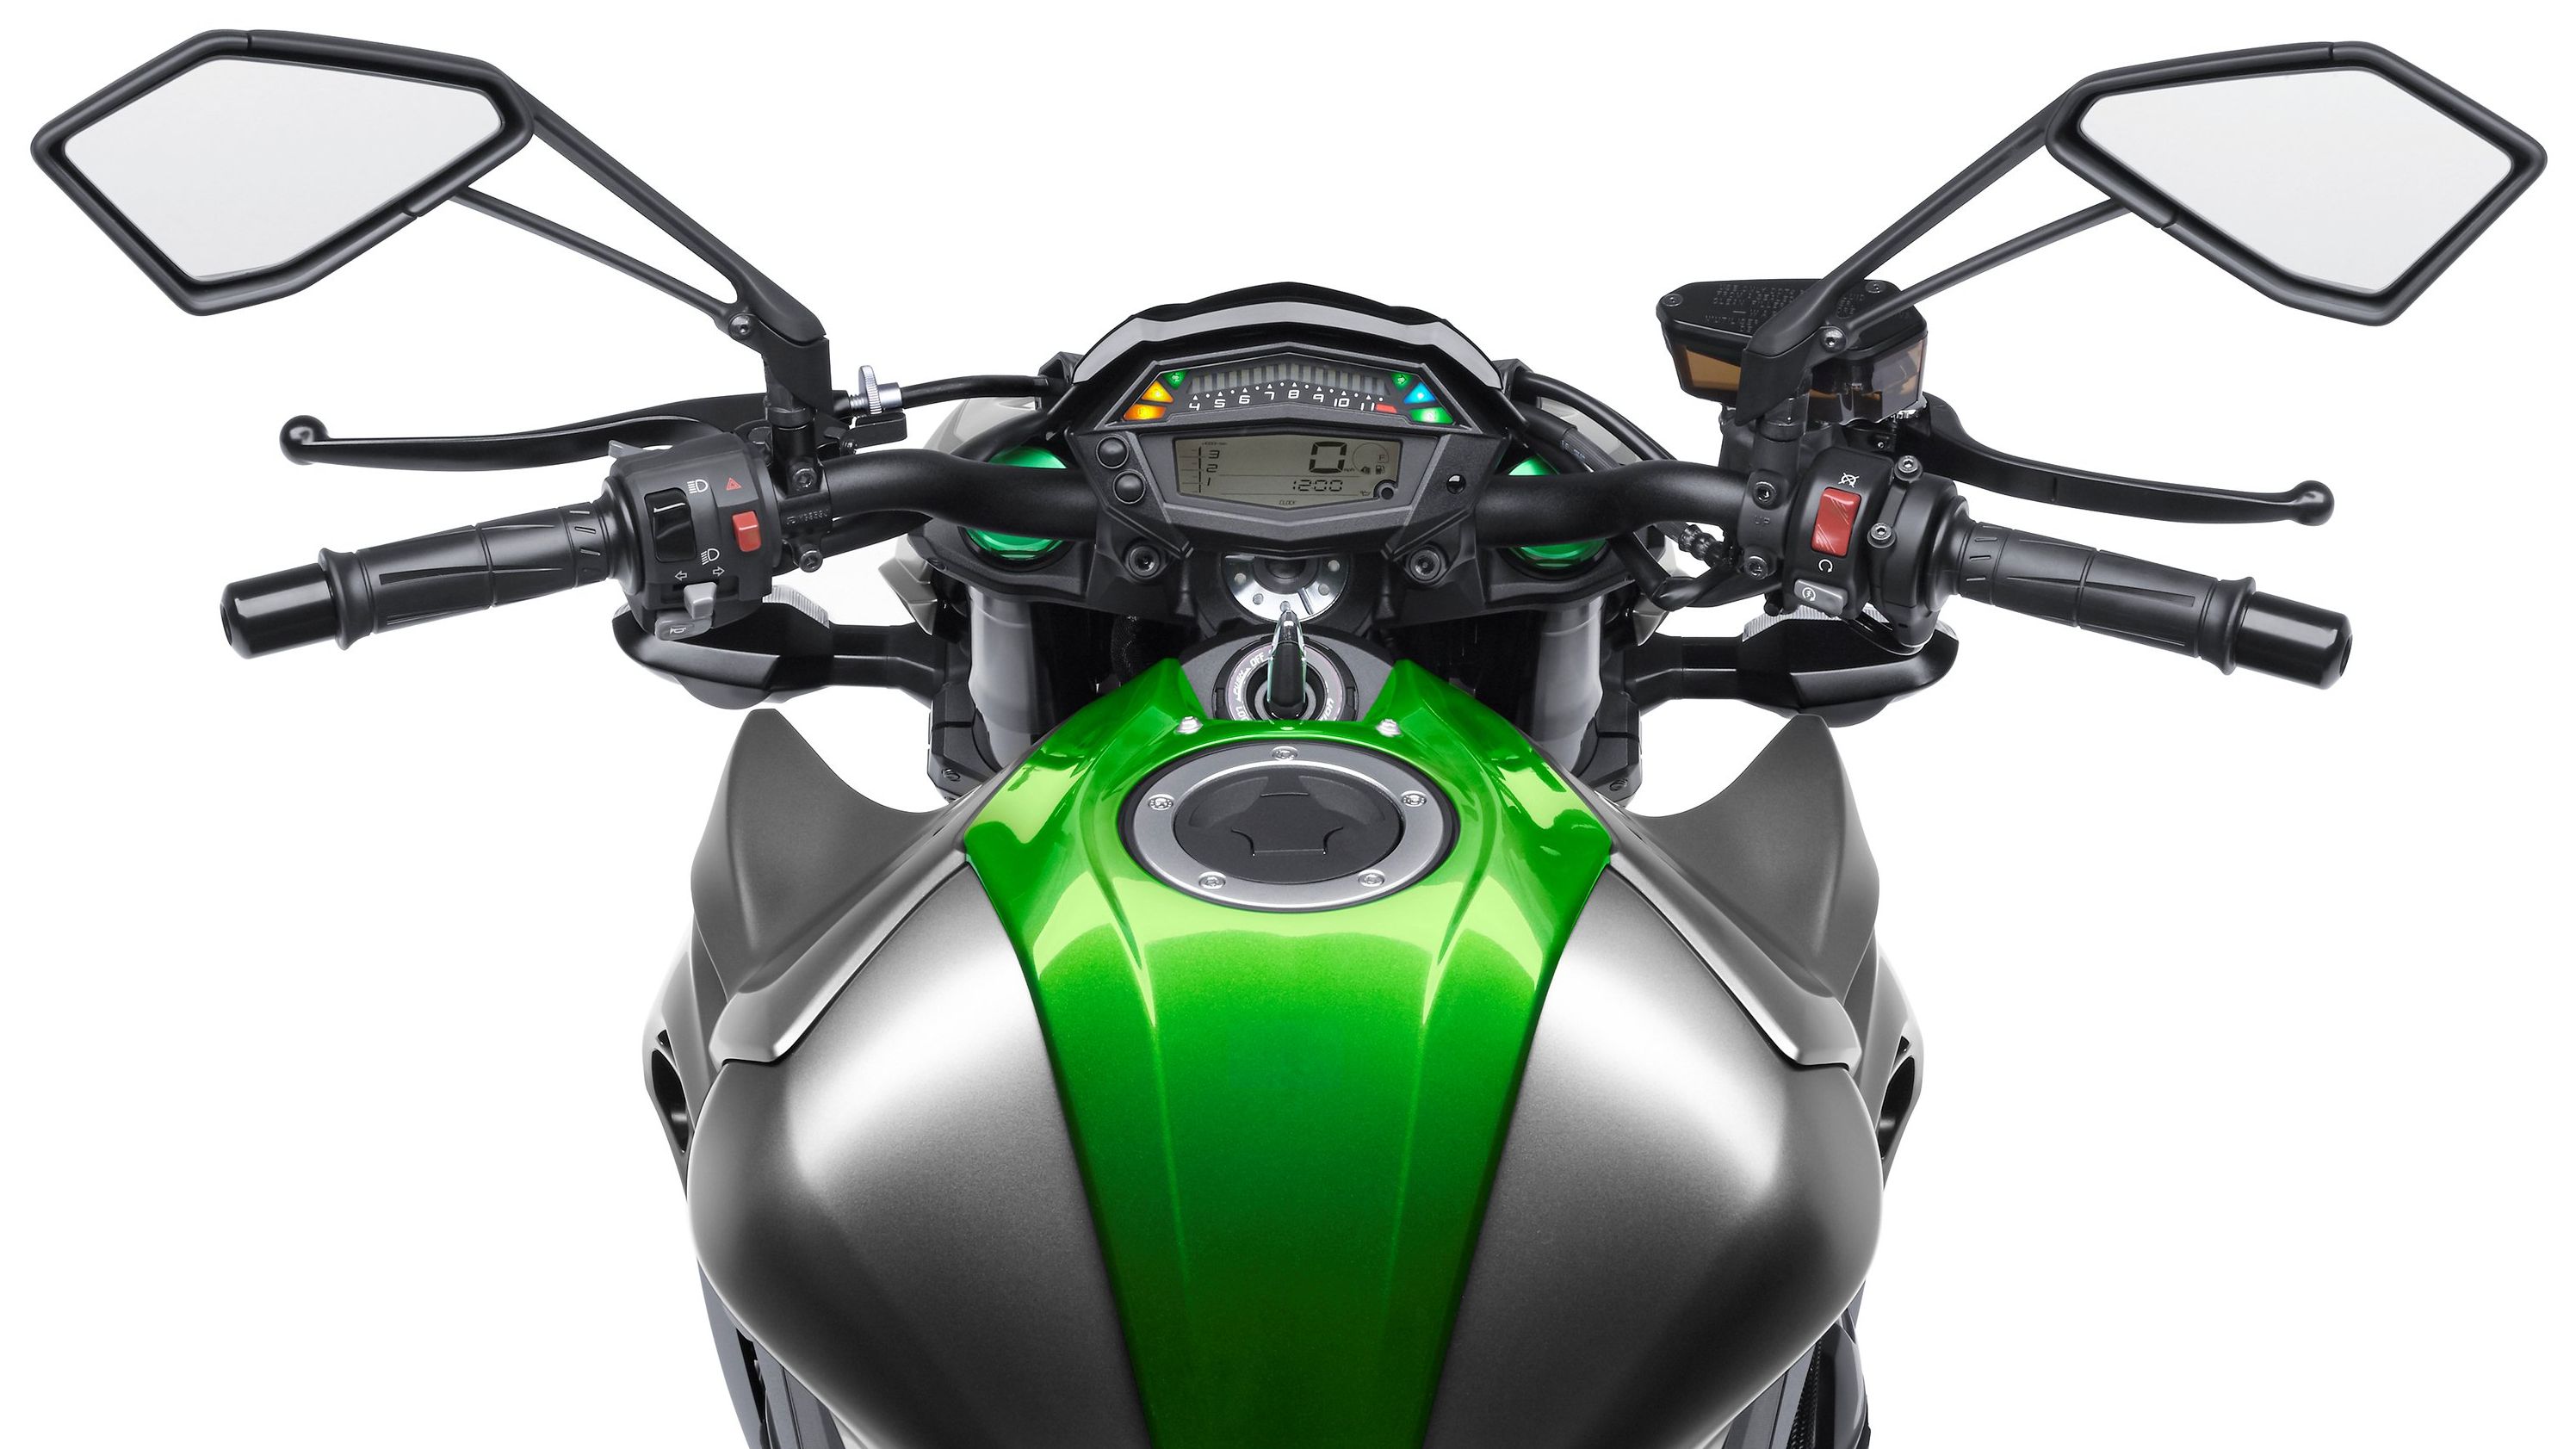 2014 - 2016 Kawasaki Z1000